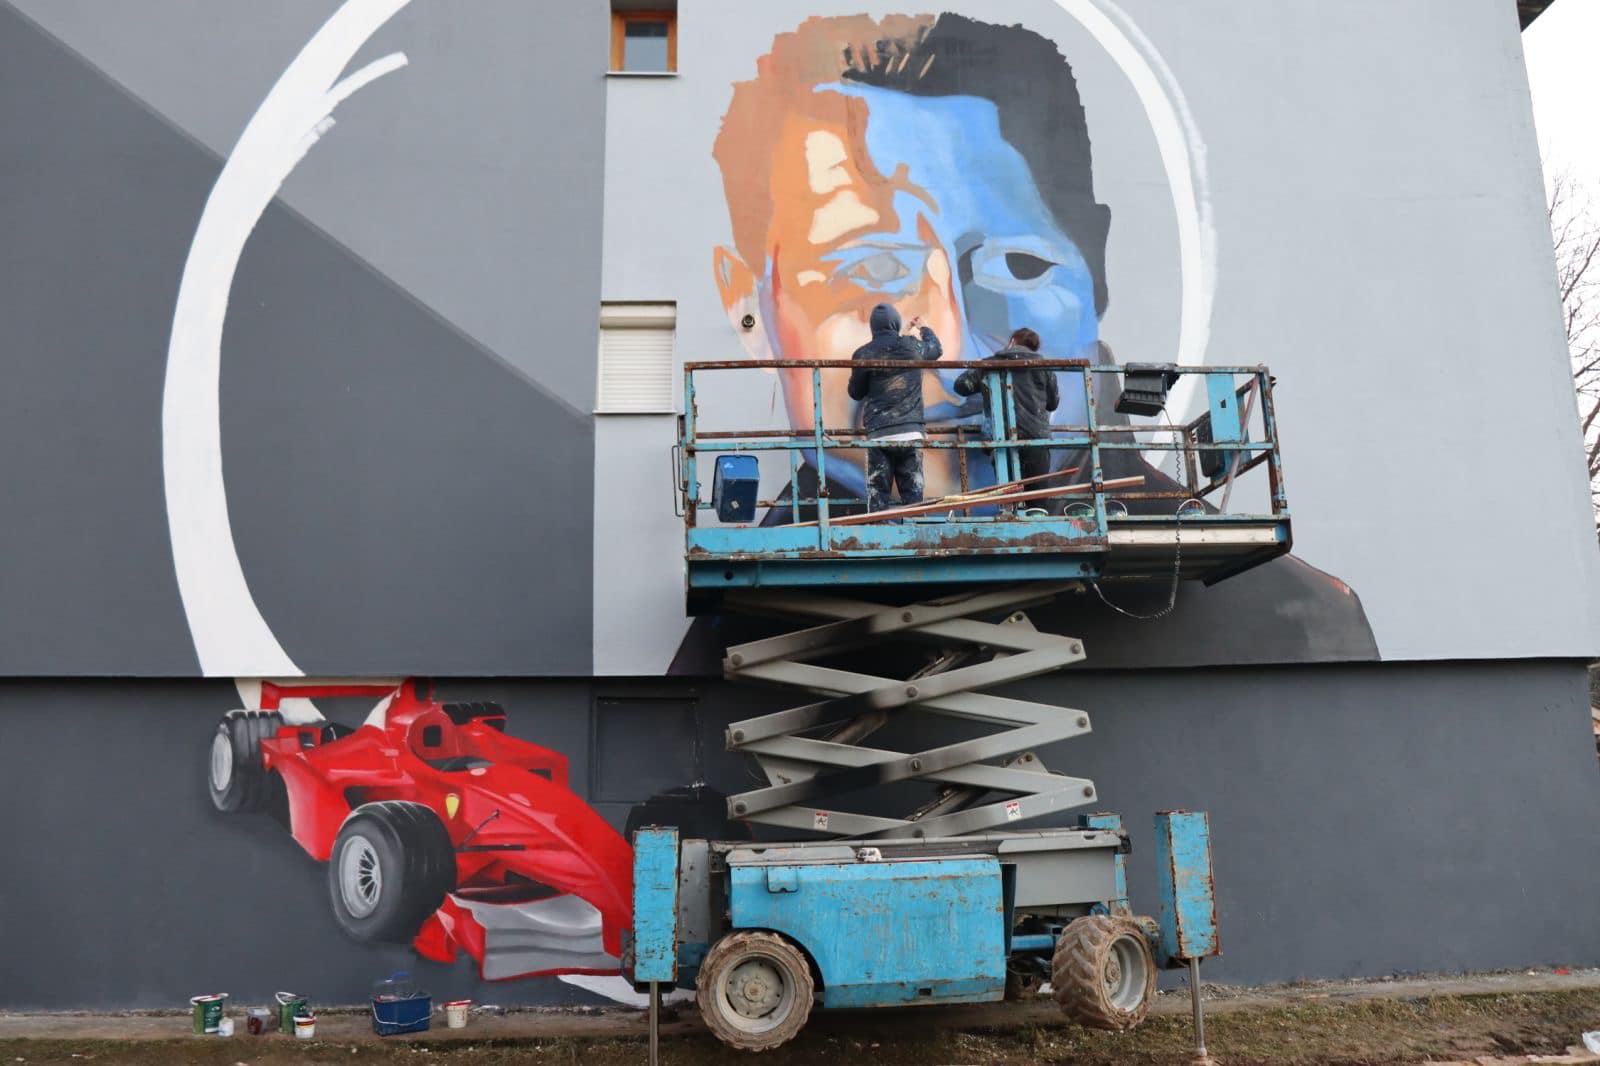 Mural Michaelu Schumacheru u Sarajevu je skoro završen